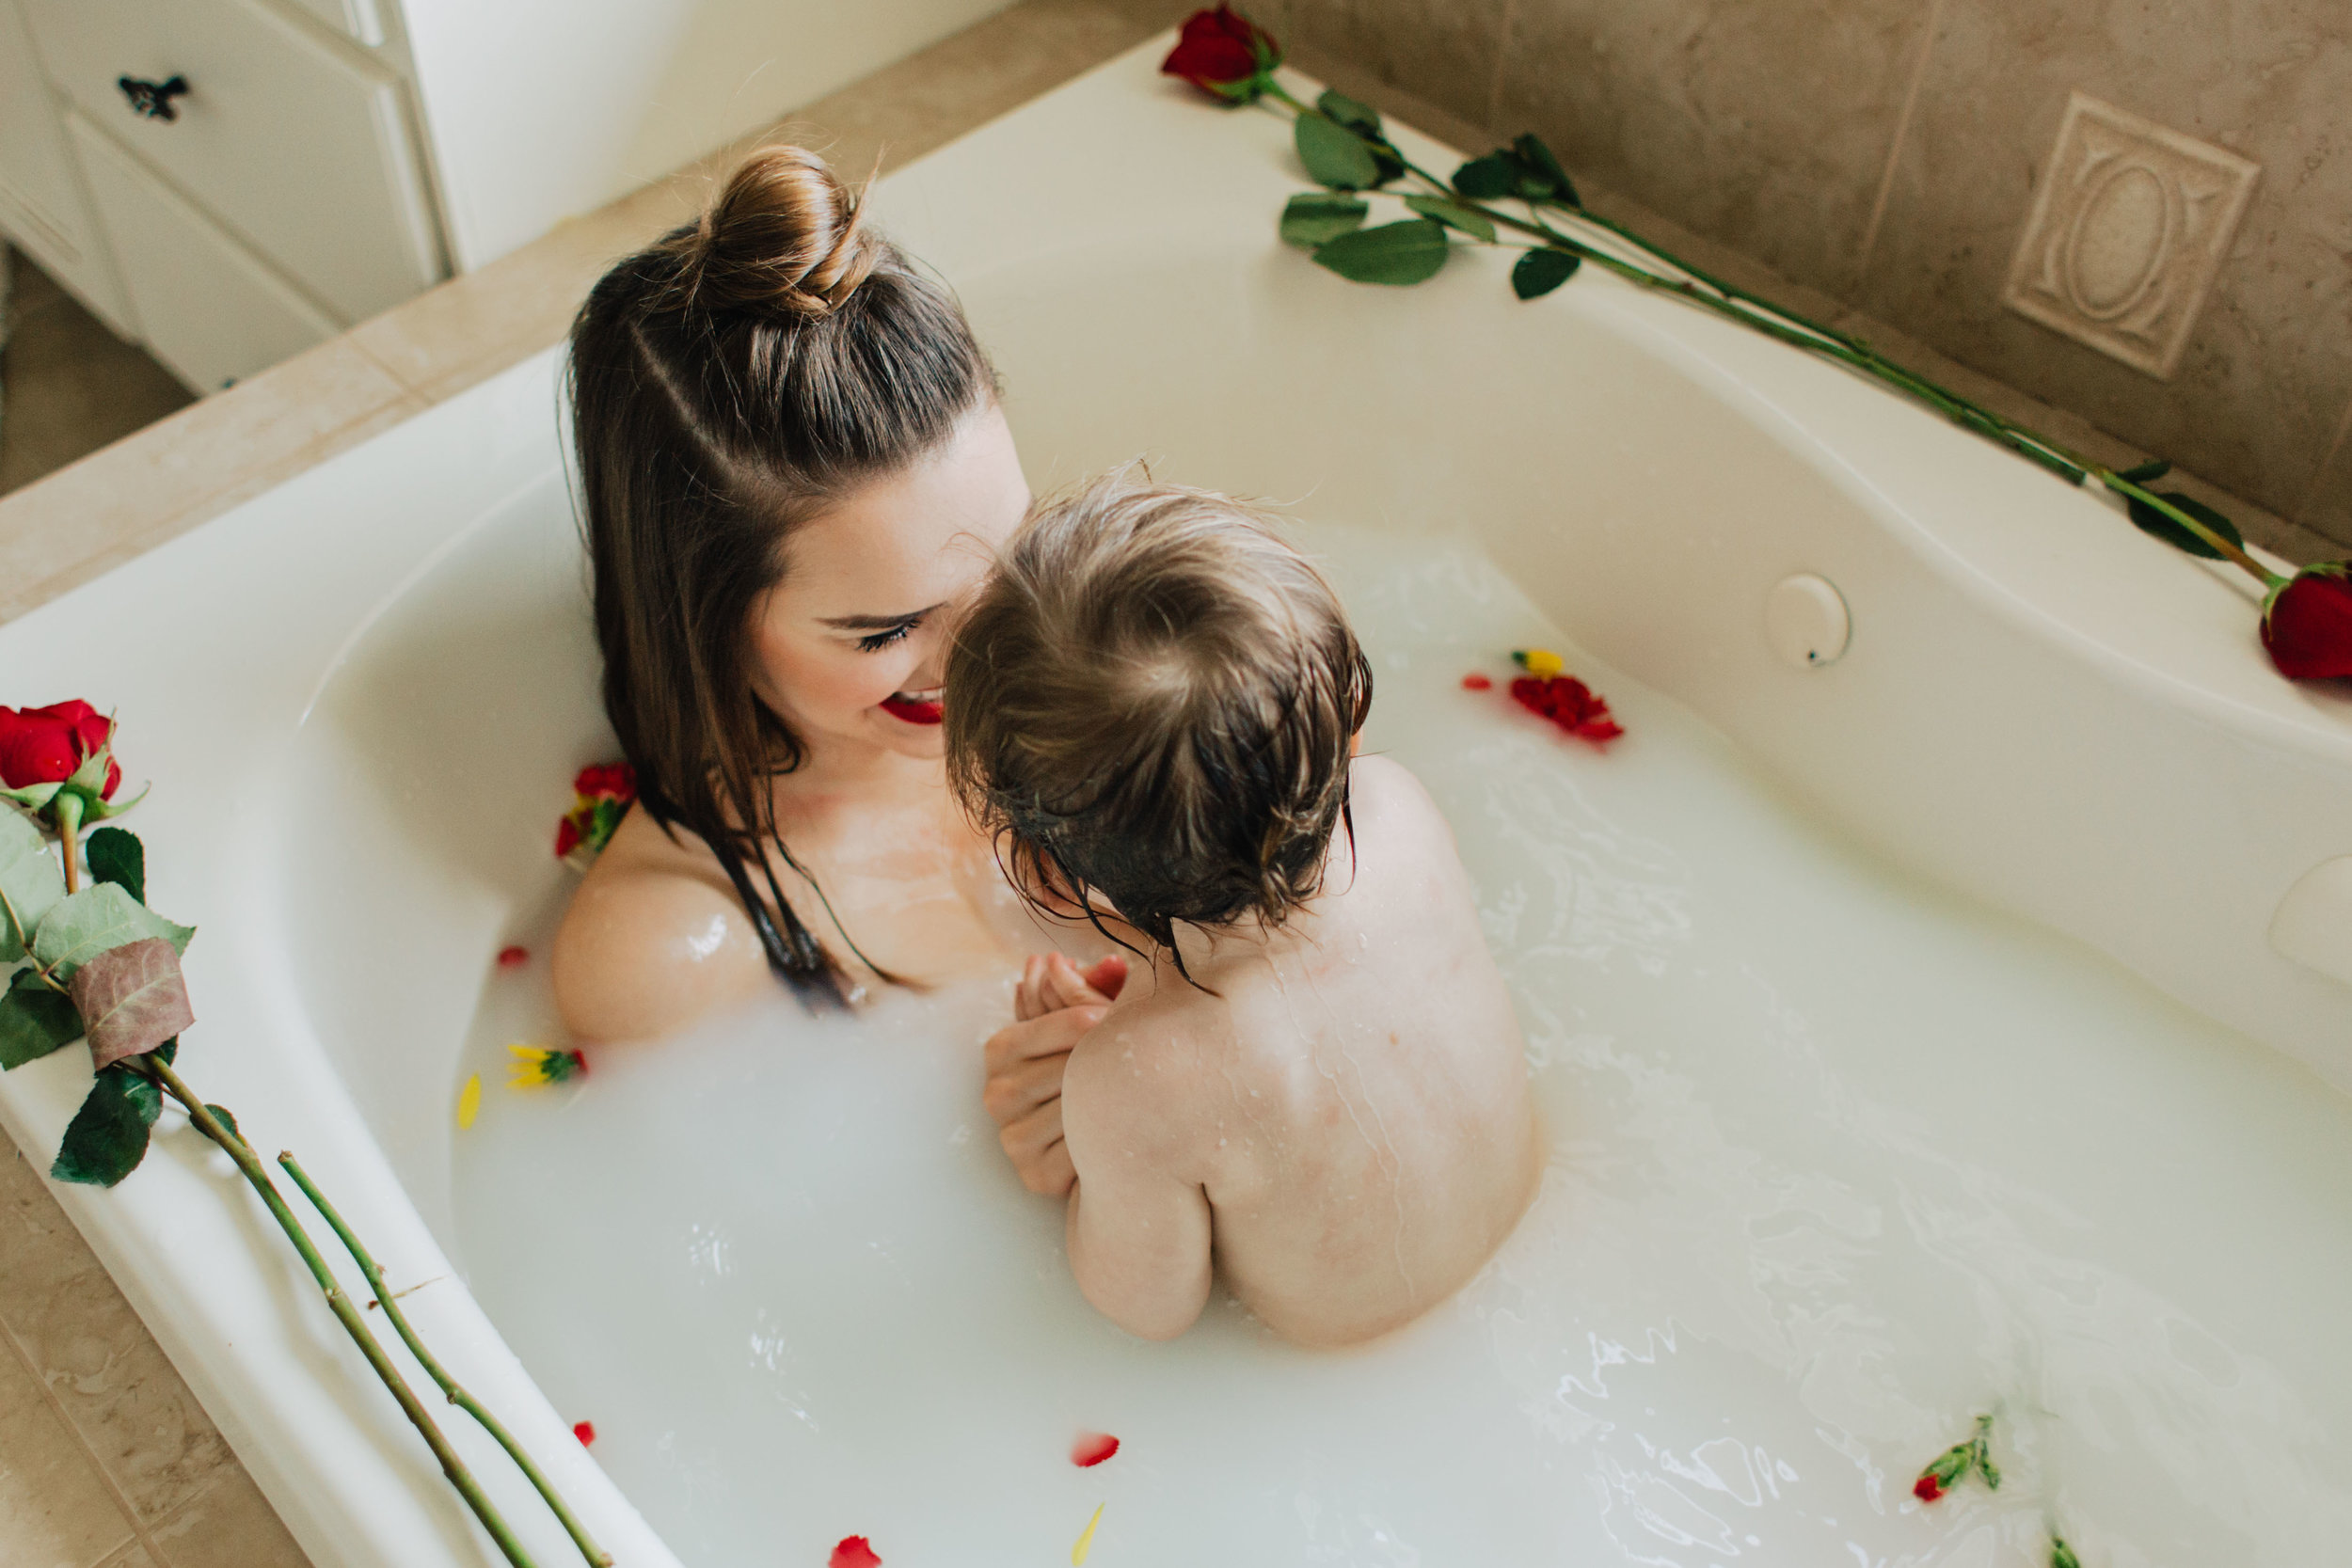 Мать сына в ванной видео. Мама в ванной. Фотосессия в ванной с ребенком и мамой. Мама и малыш в ванной. Девочки с мамой в ванной.